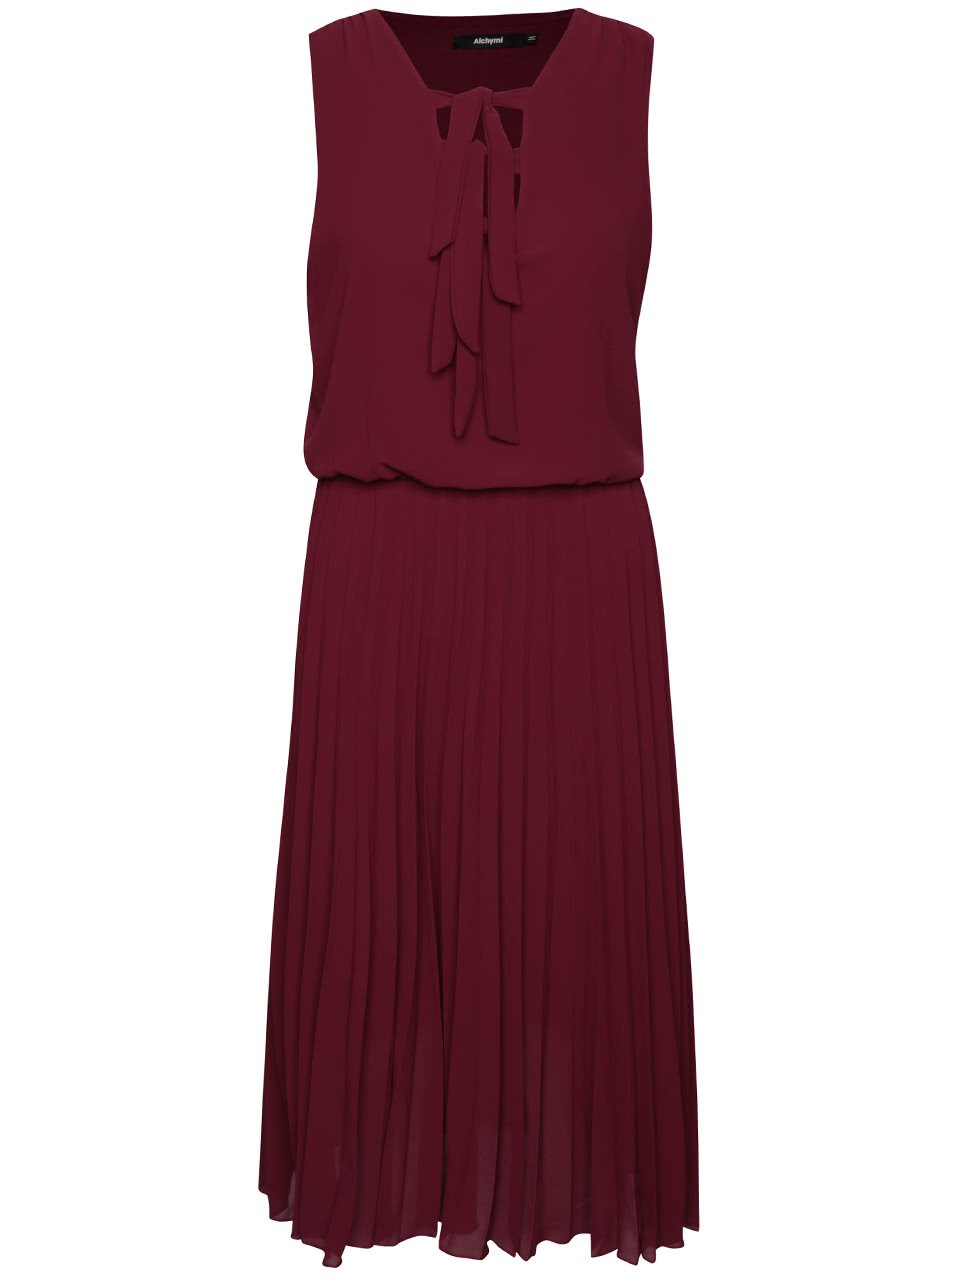 Vínové šaty s plisovanou sukní Alchymi Lavonne